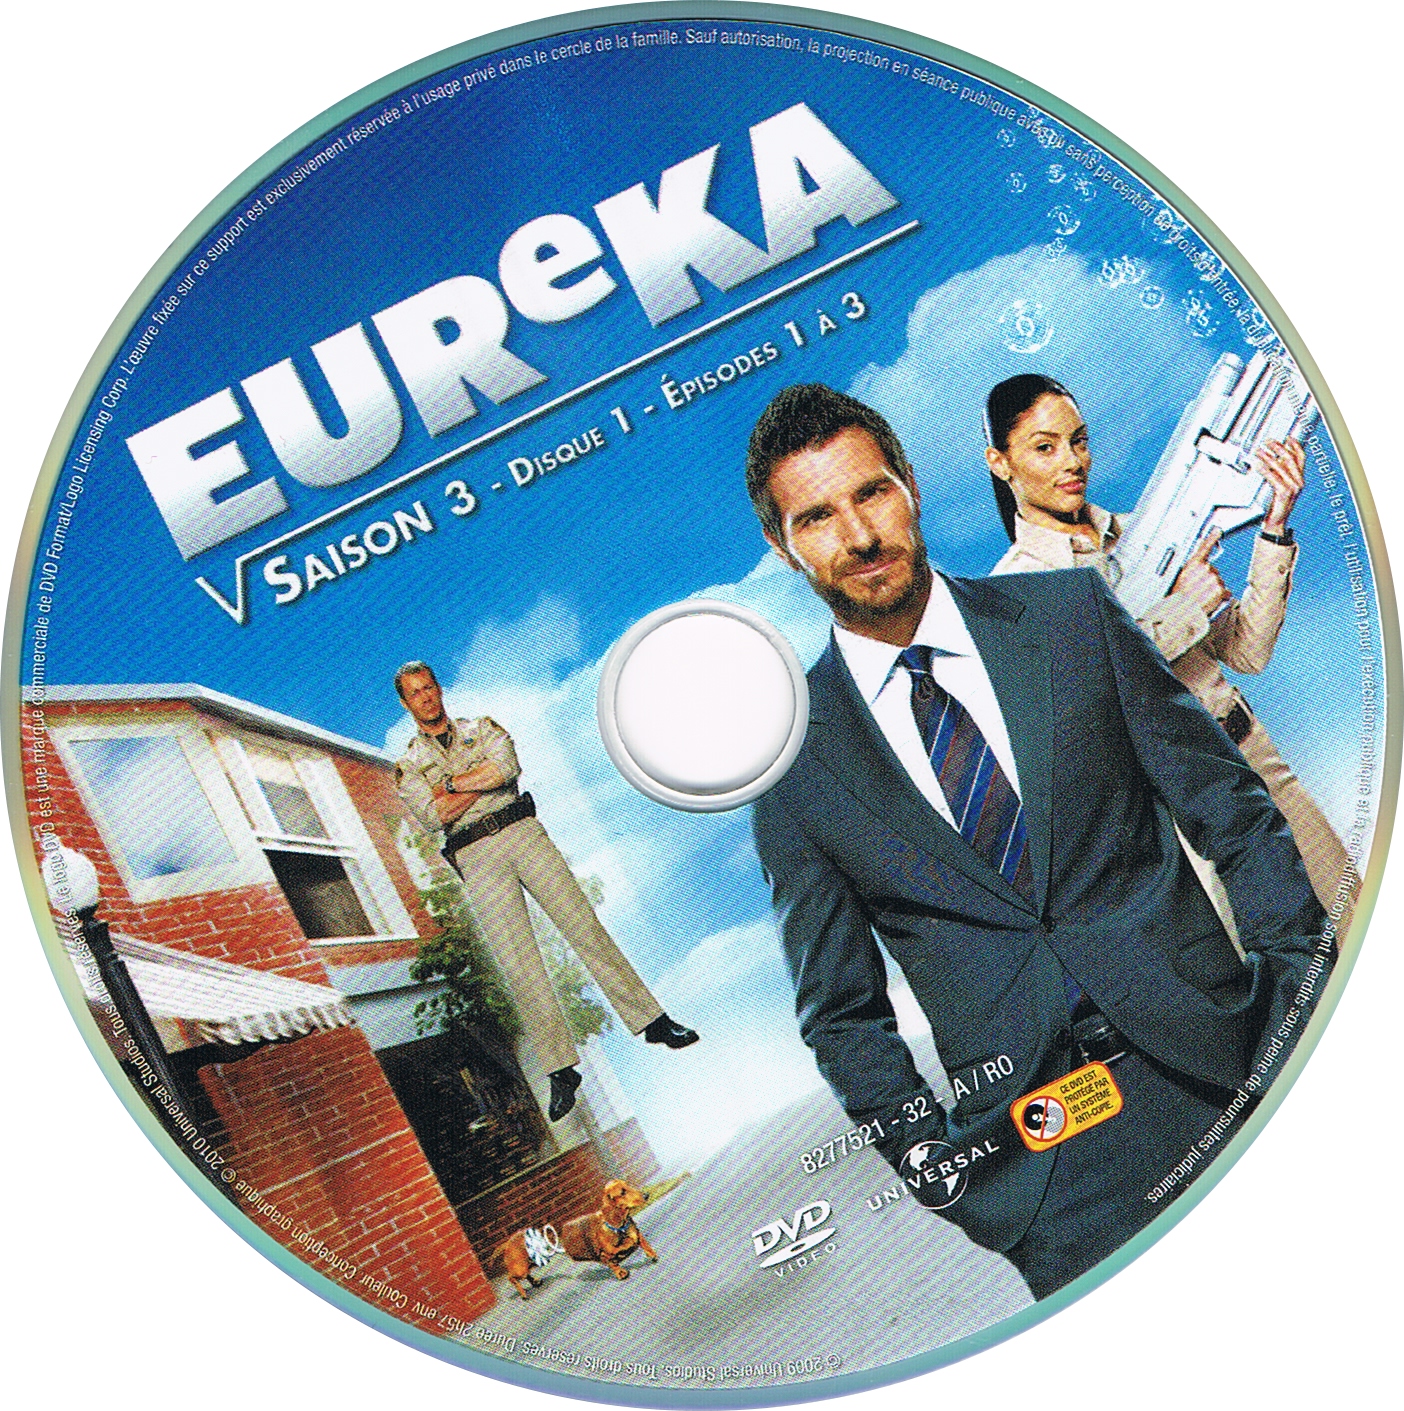 Eureka saison 3 DISC 1